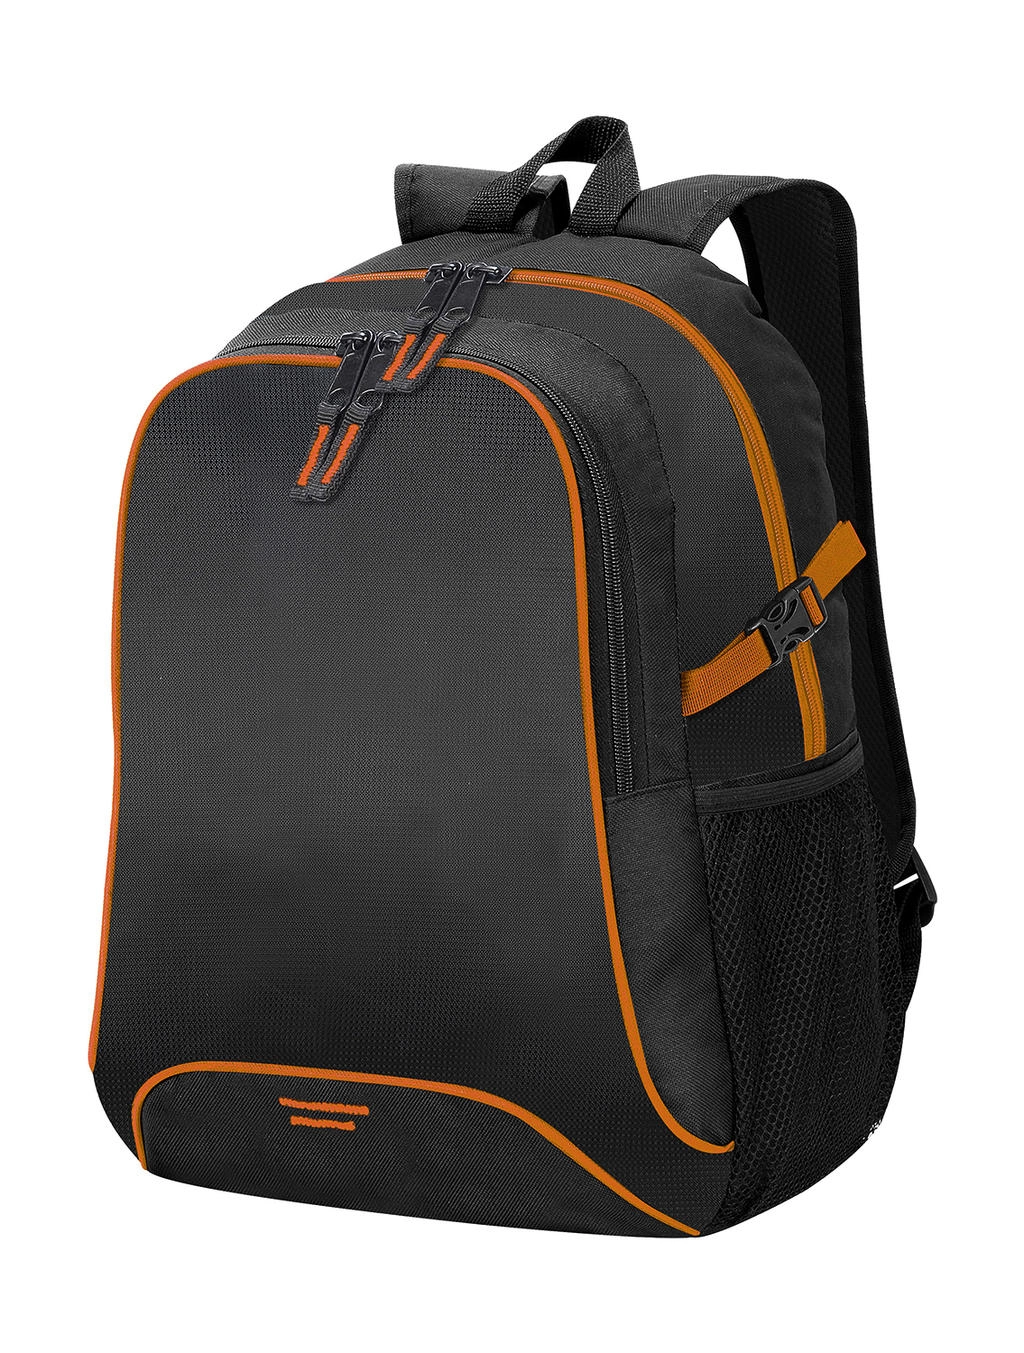 Osaka Basic Backpack zum Besticken und Bedrucken in der Farbe Black/Orange mit Ihren Logo, Schriftzug oder Motiv.